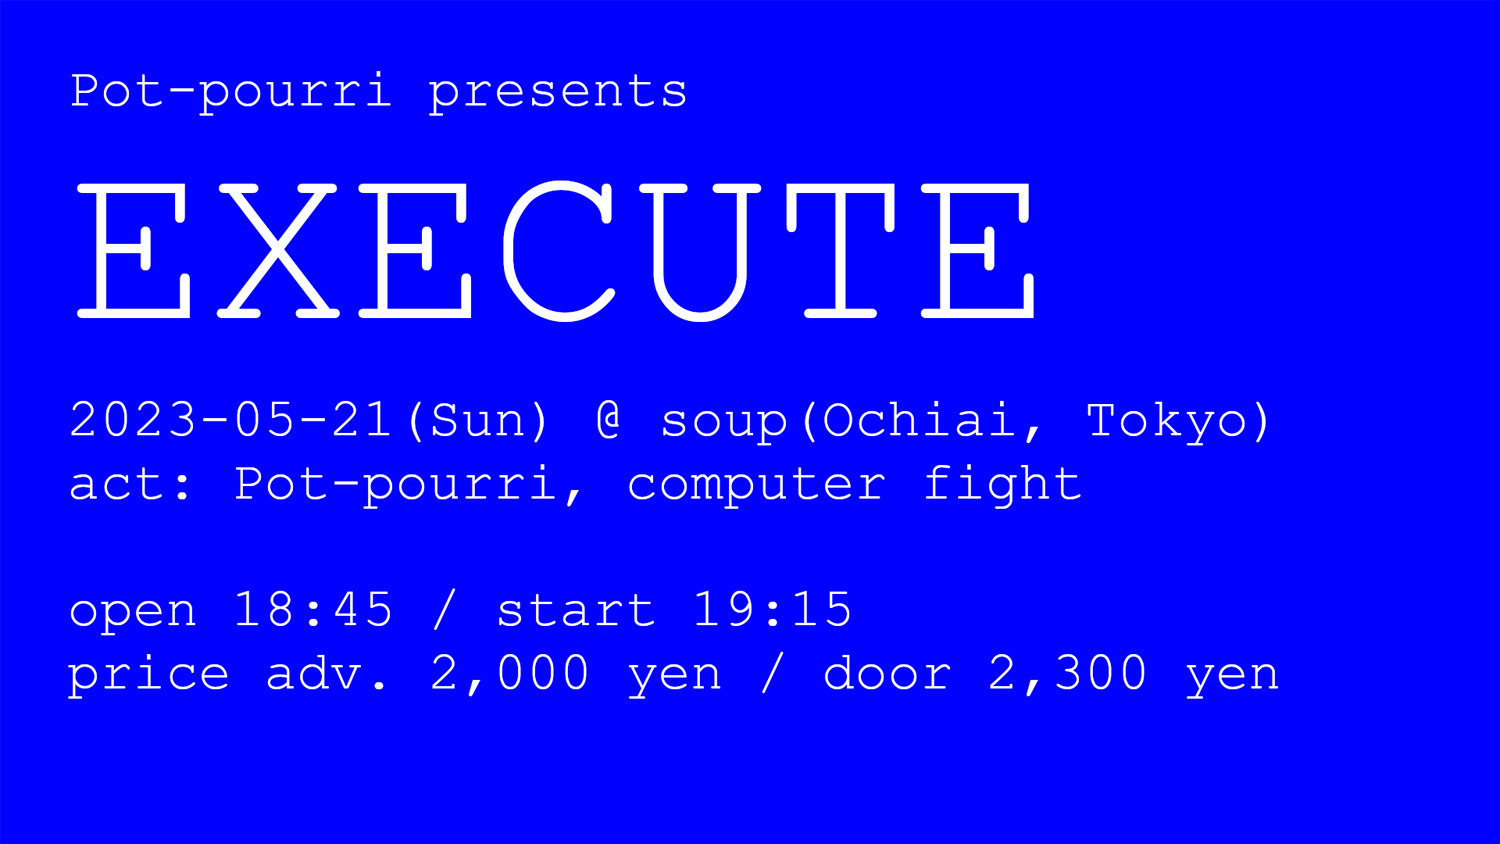 Pot-pourri Presents "EXECUTE"